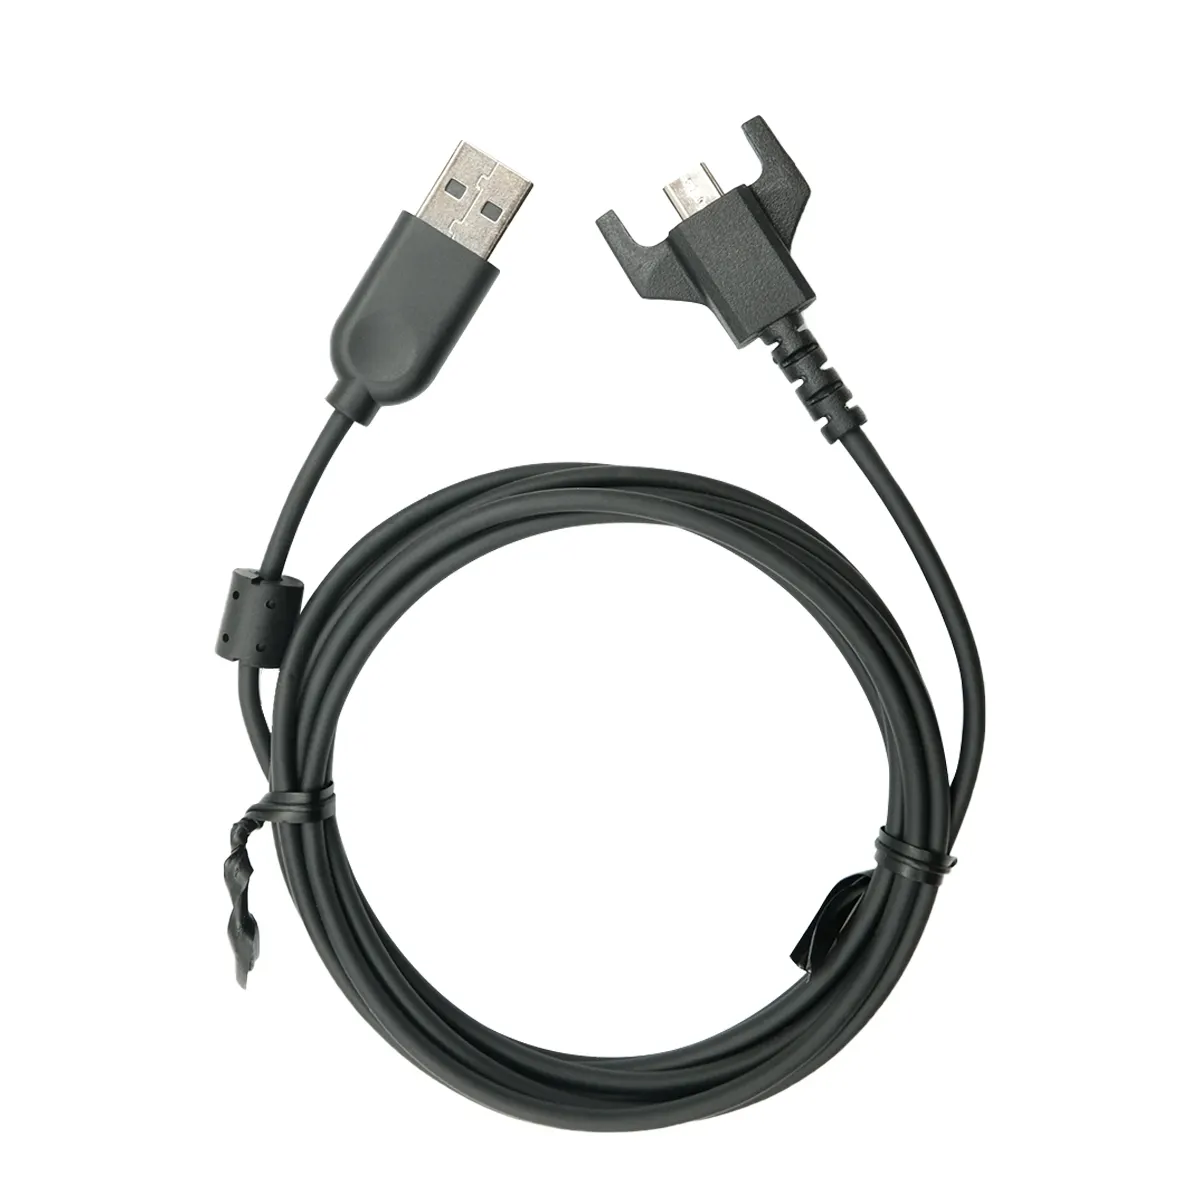 G703 G900 G903 G प्रो वायरलेस G प्रो X सुपरलाइट गेमिंग माउस के लिए लॉजिटेक ओरिजिनल USB चार्जिंग केबल, USB से माइक्रो USB (काला)